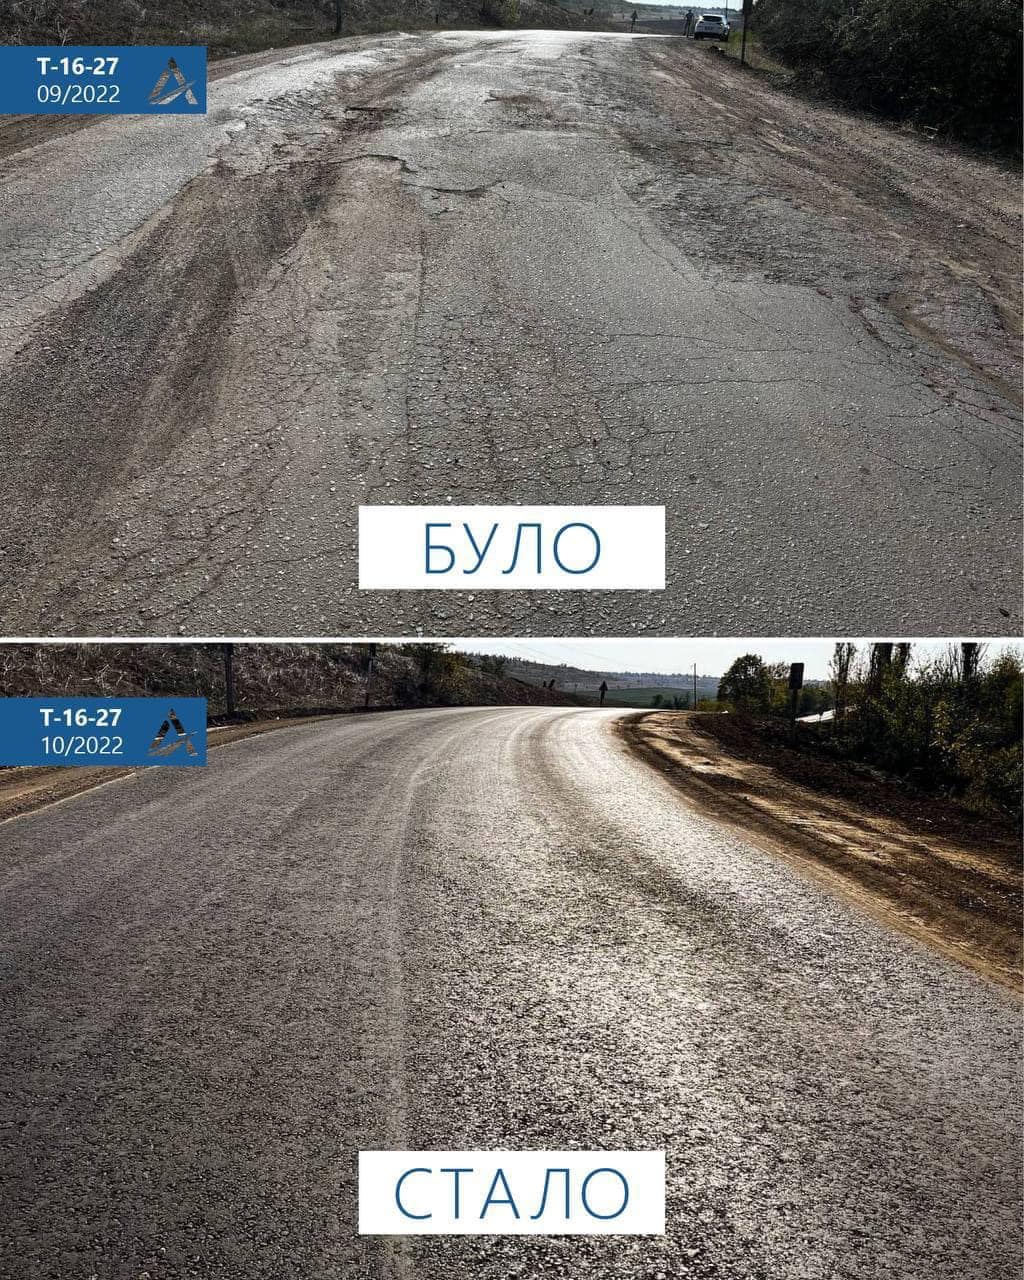 Було-стало: САД відзвітувала про завершення ремонту ділянки дороги "Серпневе"-Тарутине-Арциз-Сарата